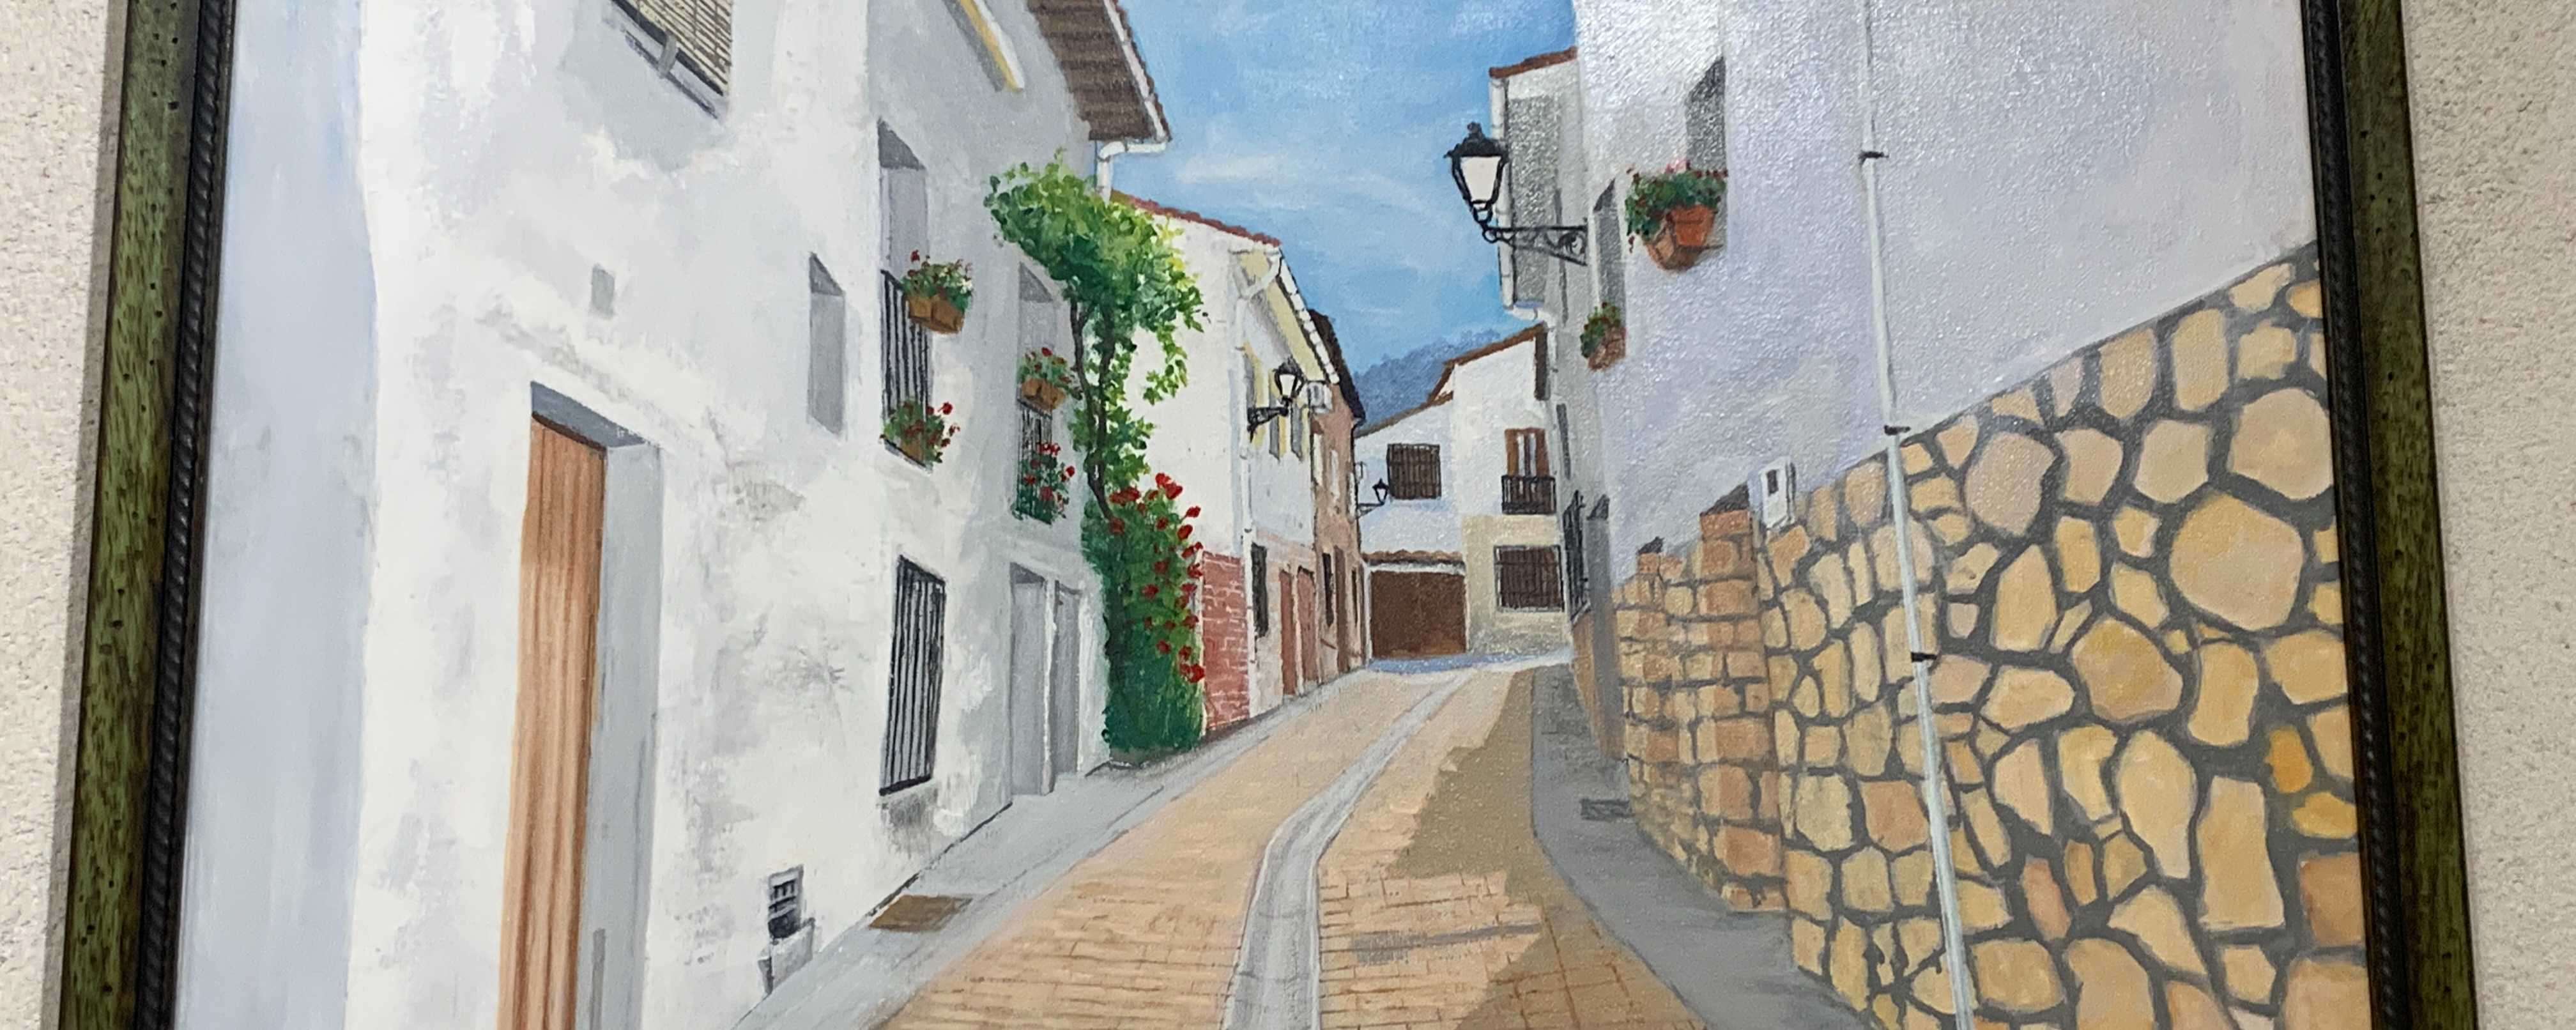 La obra del pintor local Alfonso Plaza, hasta el 31 de julio, en El Molino